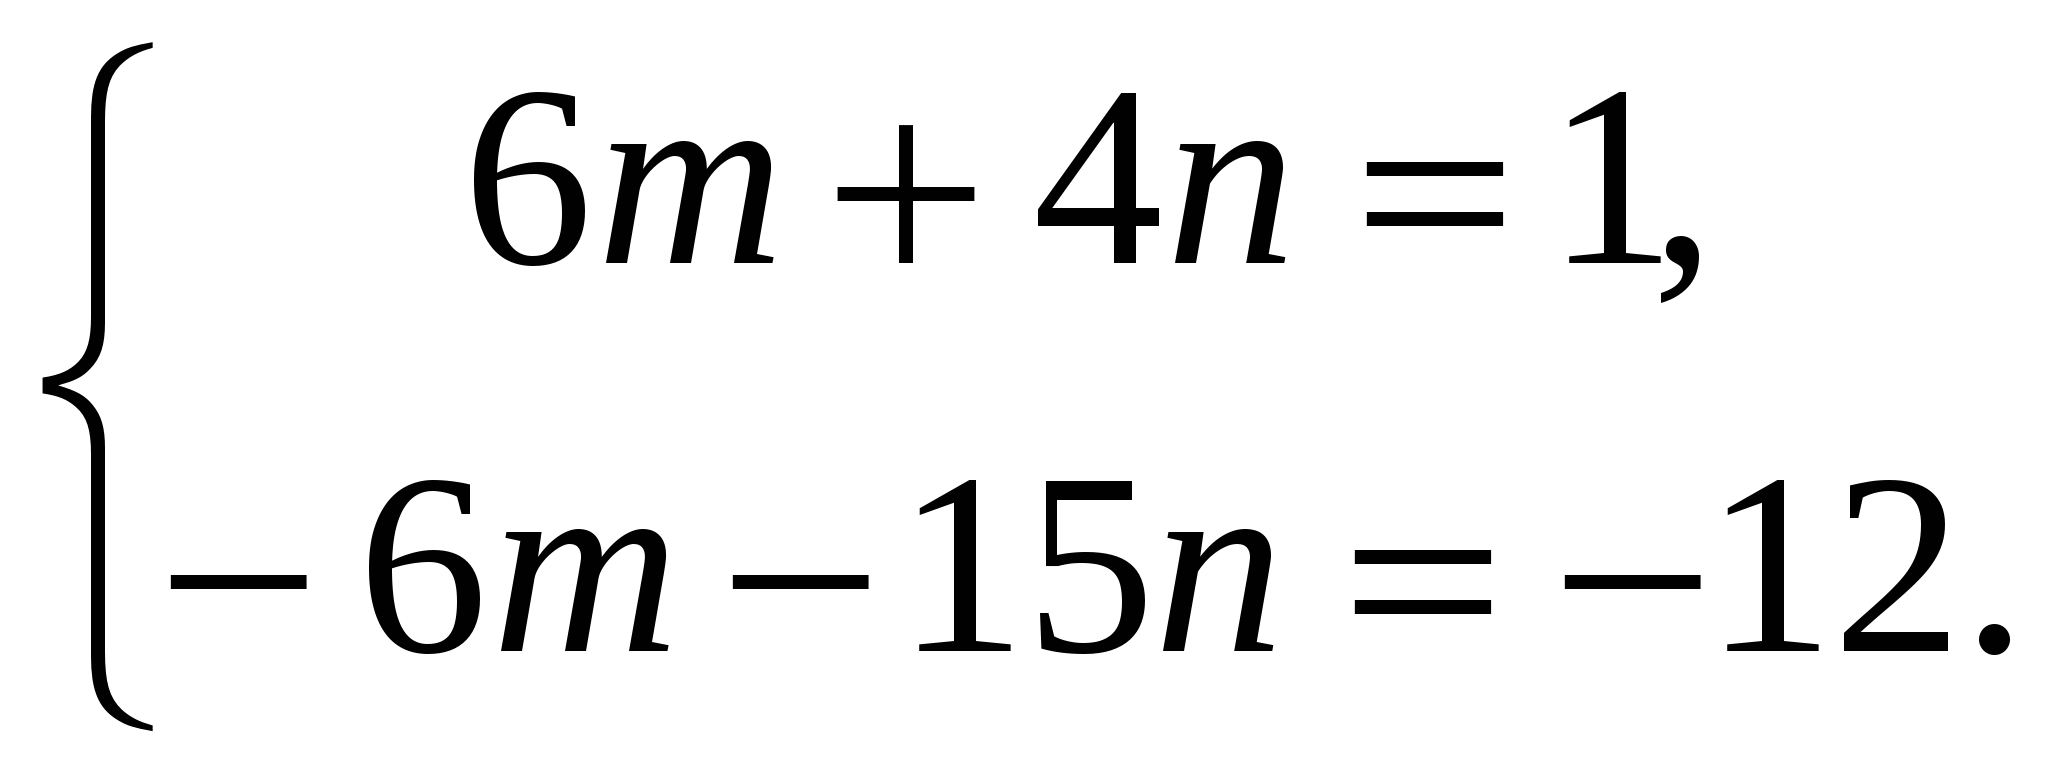 Справочный материал по теме Решение систем уравнений методом сложения